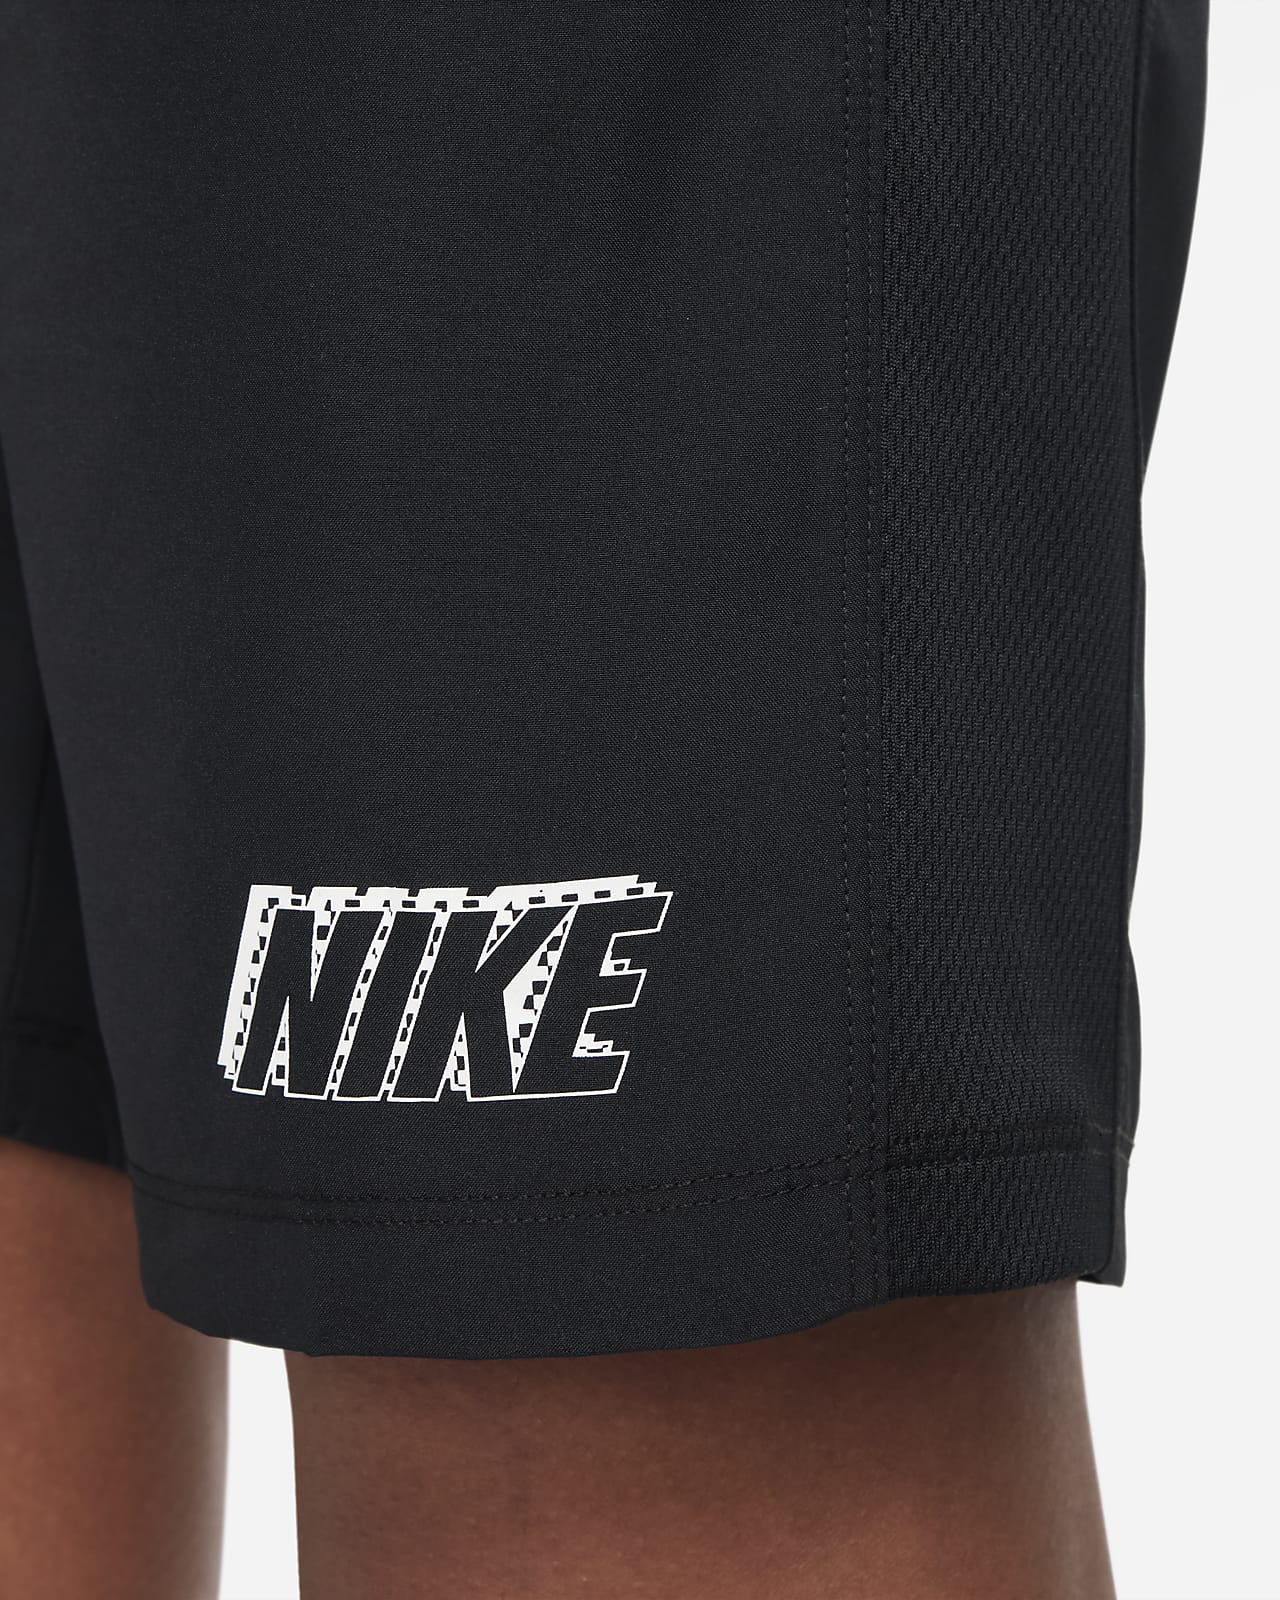 Nike Dri-FIT Big Kids' Knit Soccer Shorts